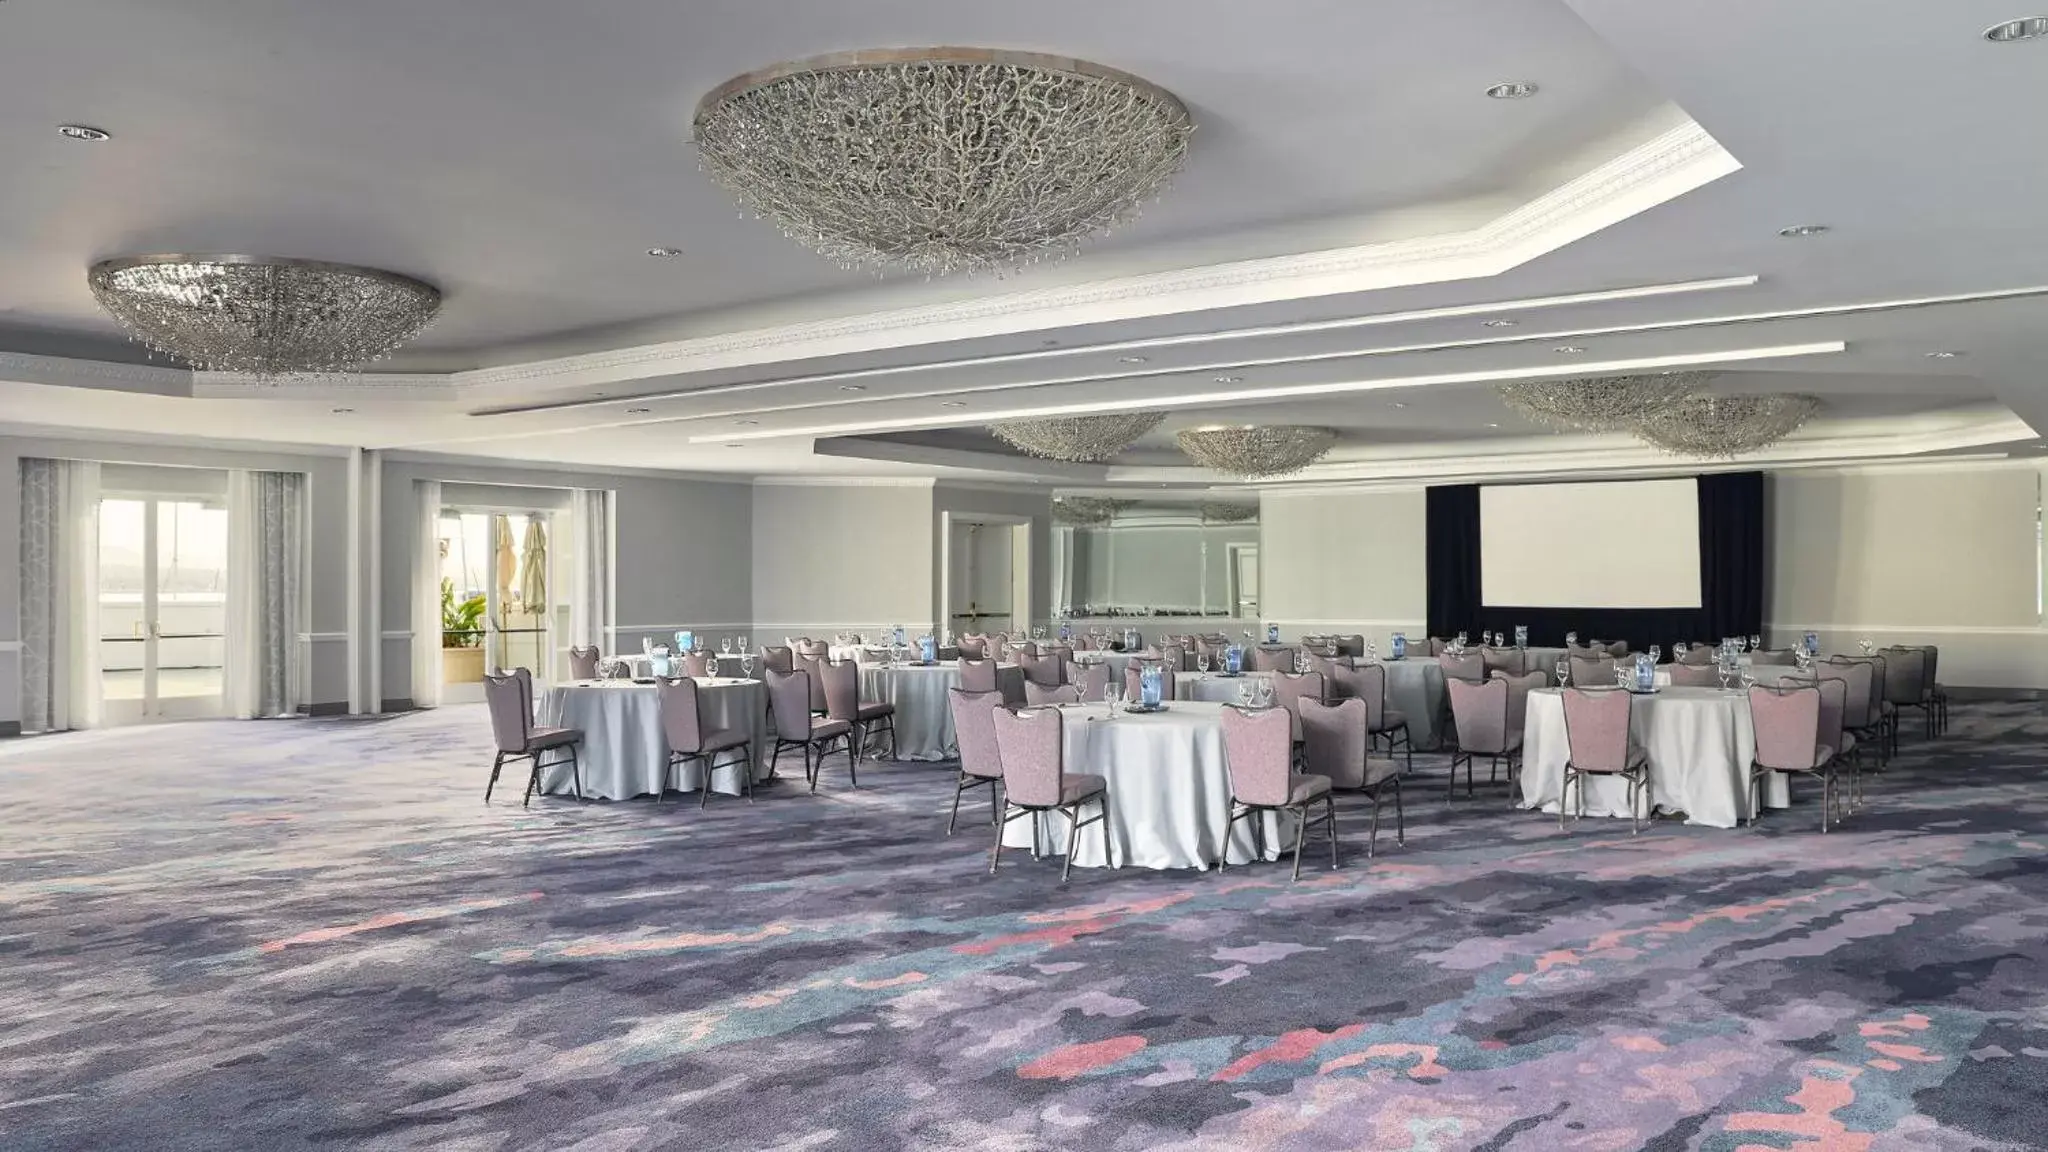 Banquet/Function facilities, Banquet Facilities in Loews Coronado Bay Resort